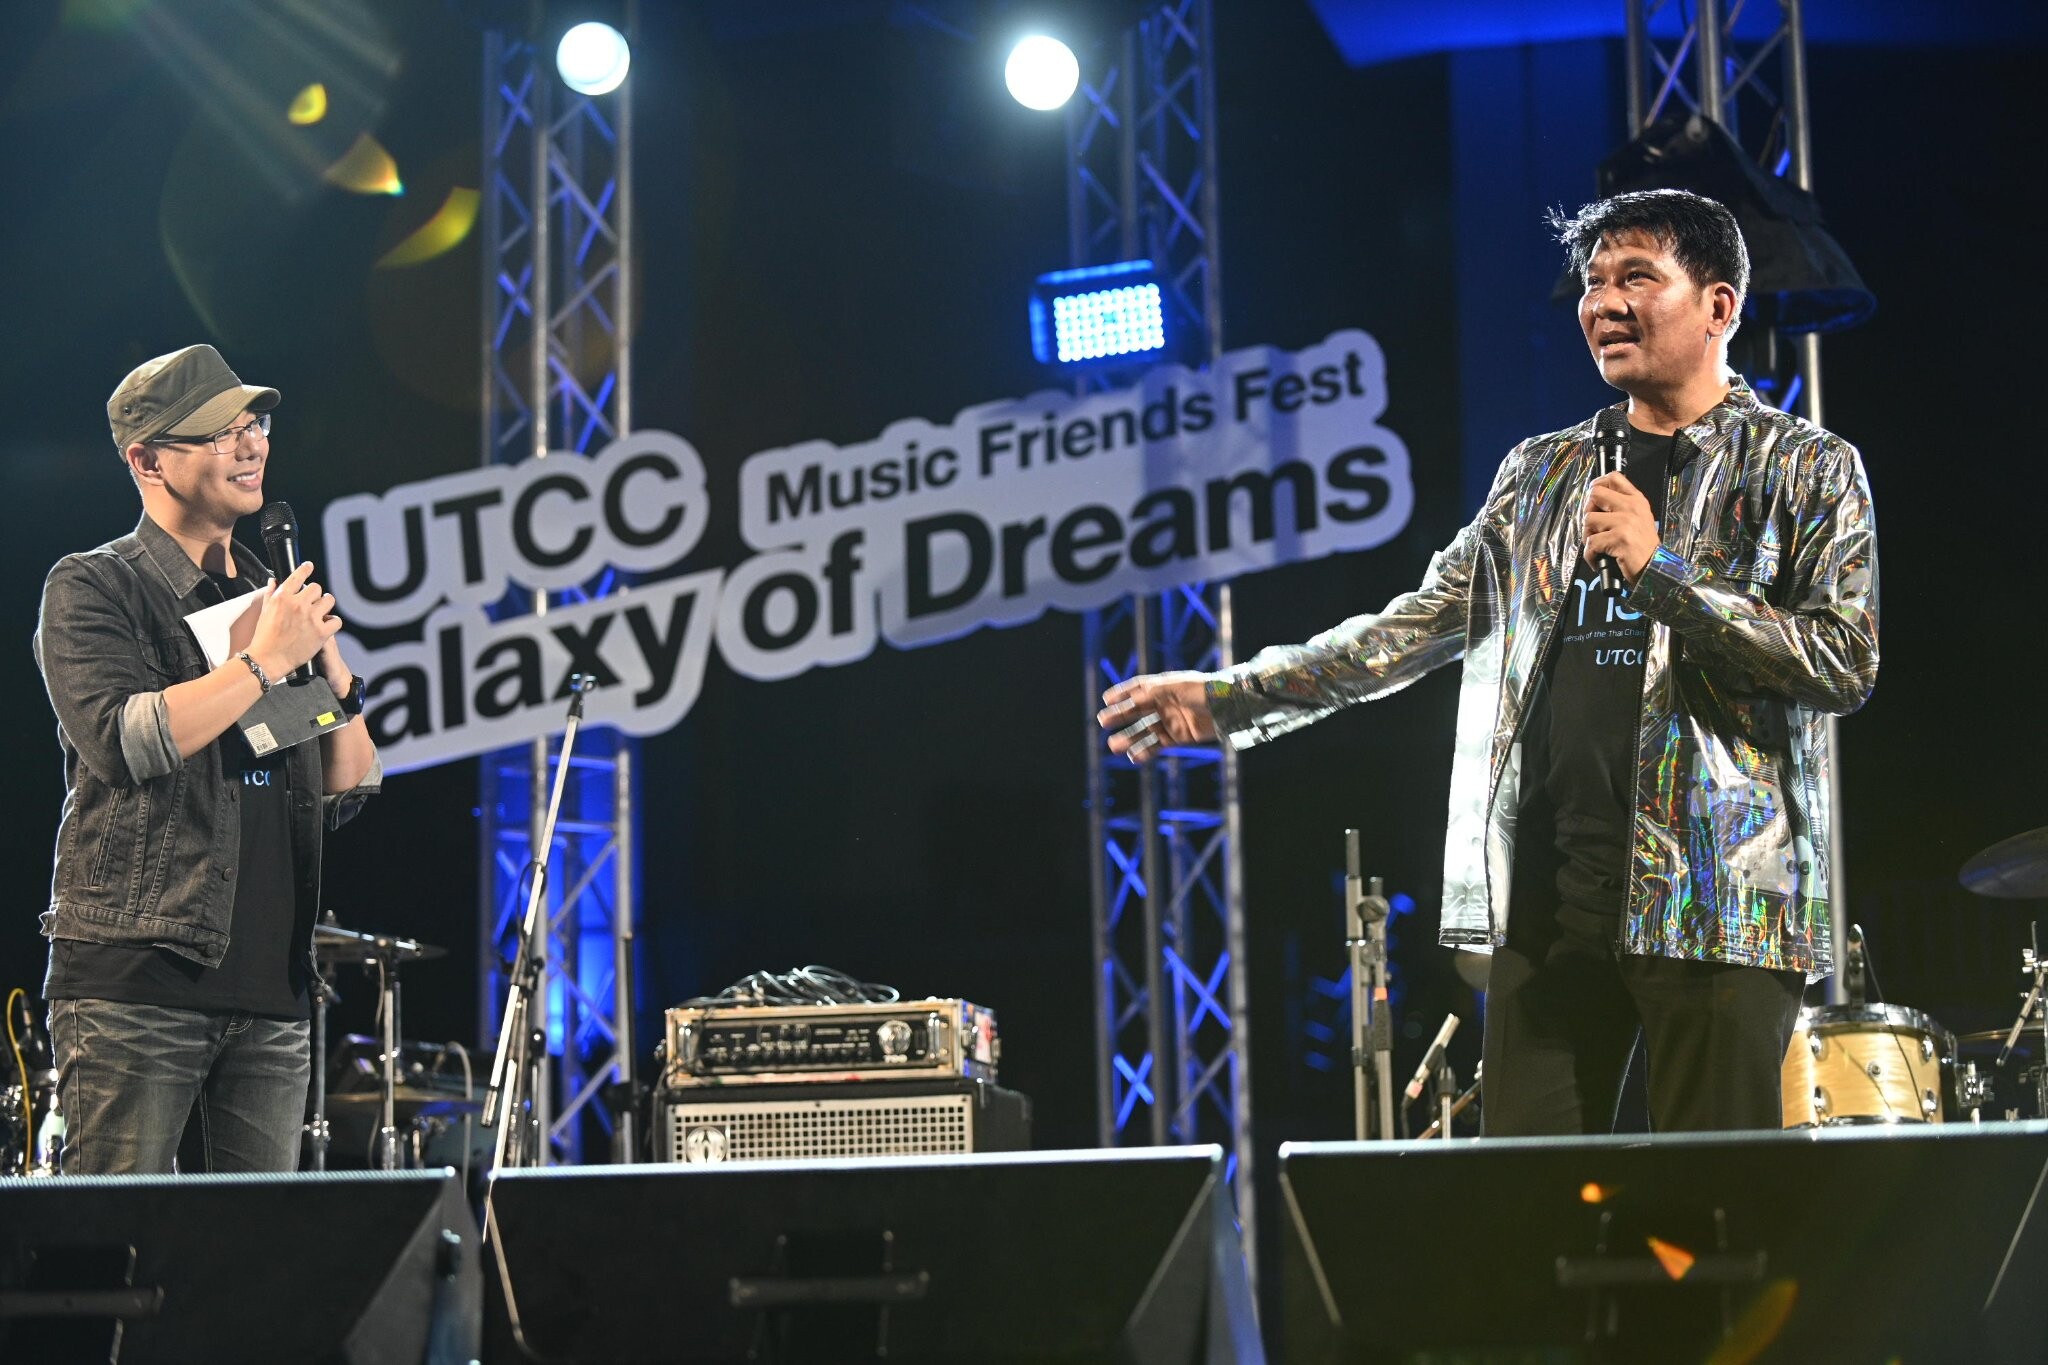 เทศกาลดนตรี UTCC Music Friends Fest: Galaxy of Dreams